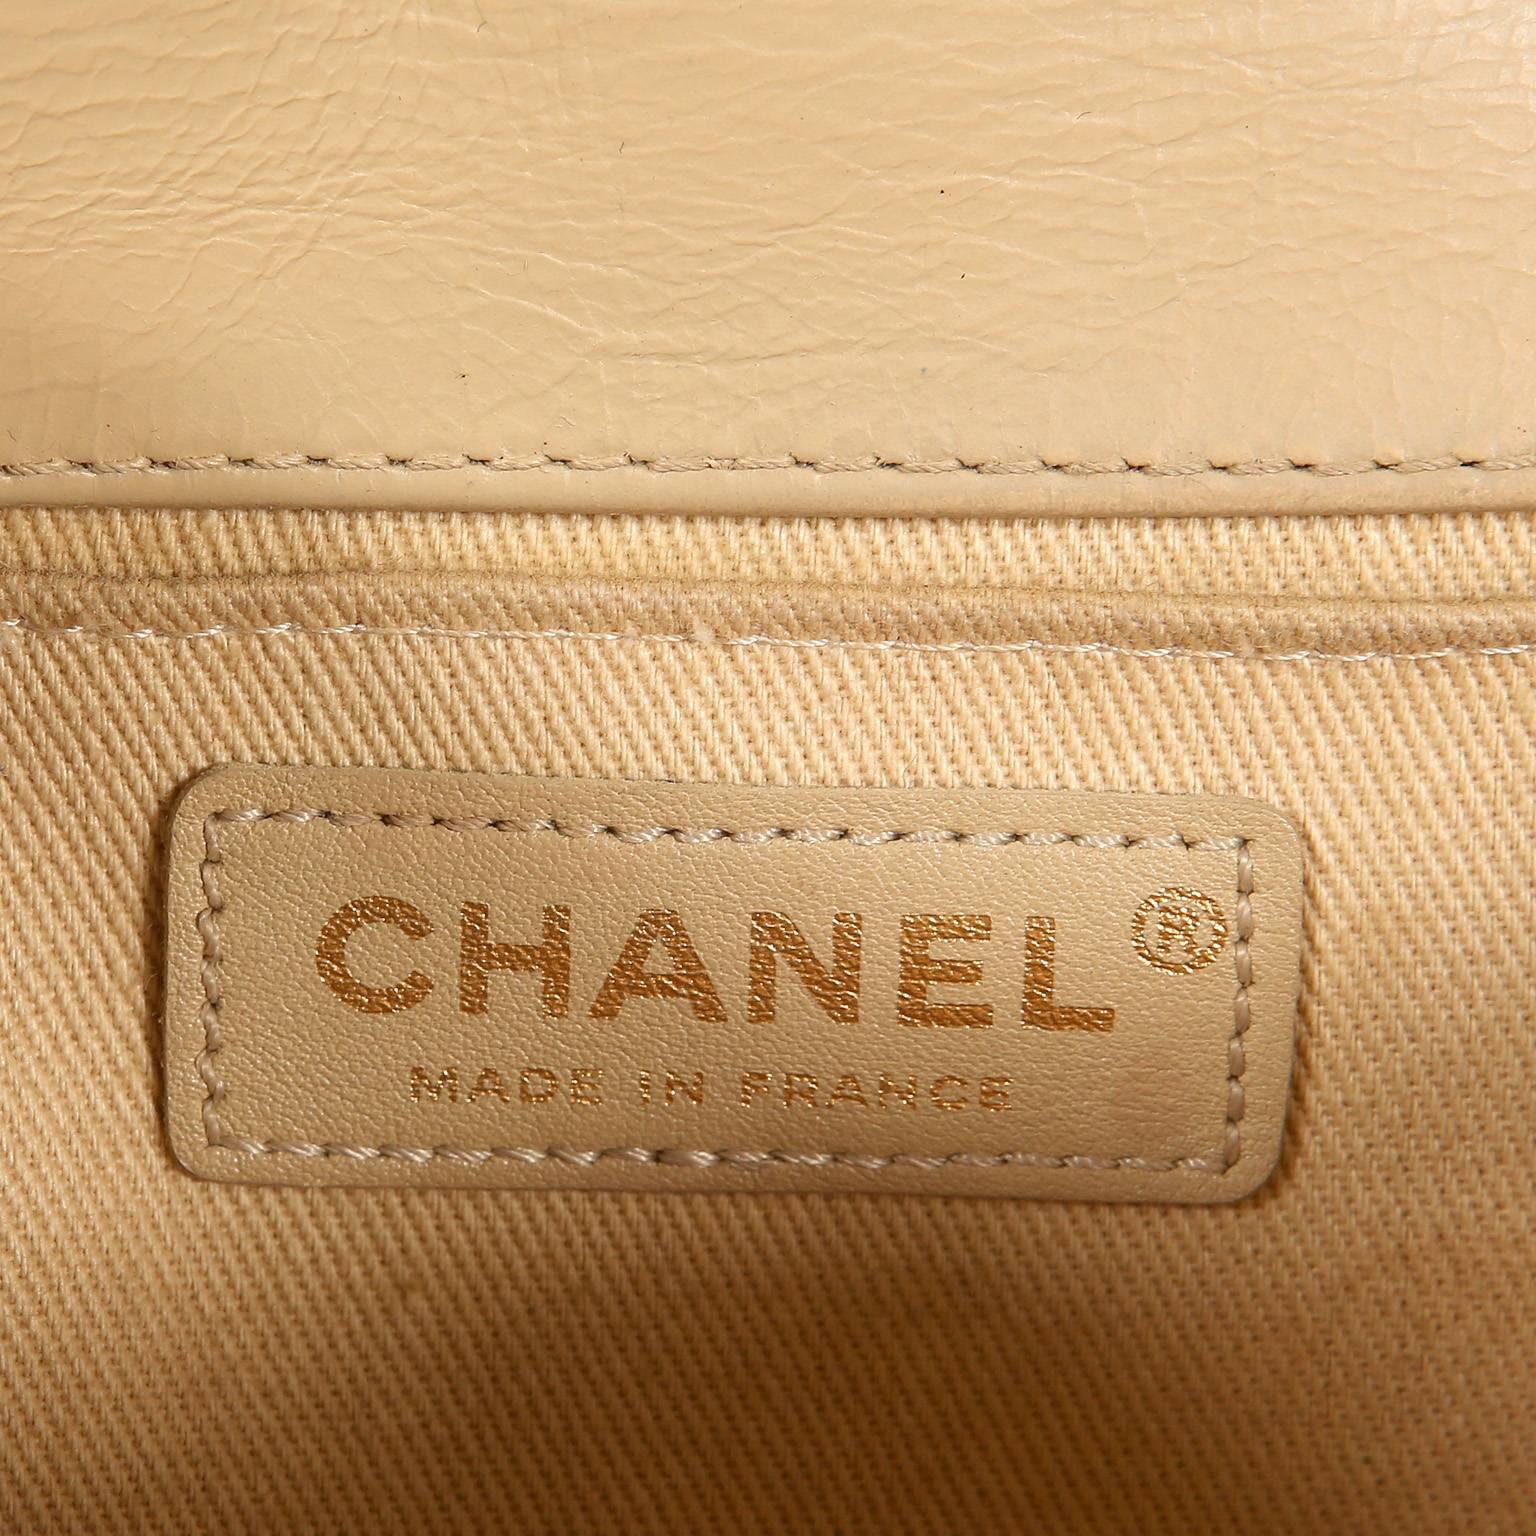 Chanel Beige Leather Medium Boy Bag- Limited Edition 4